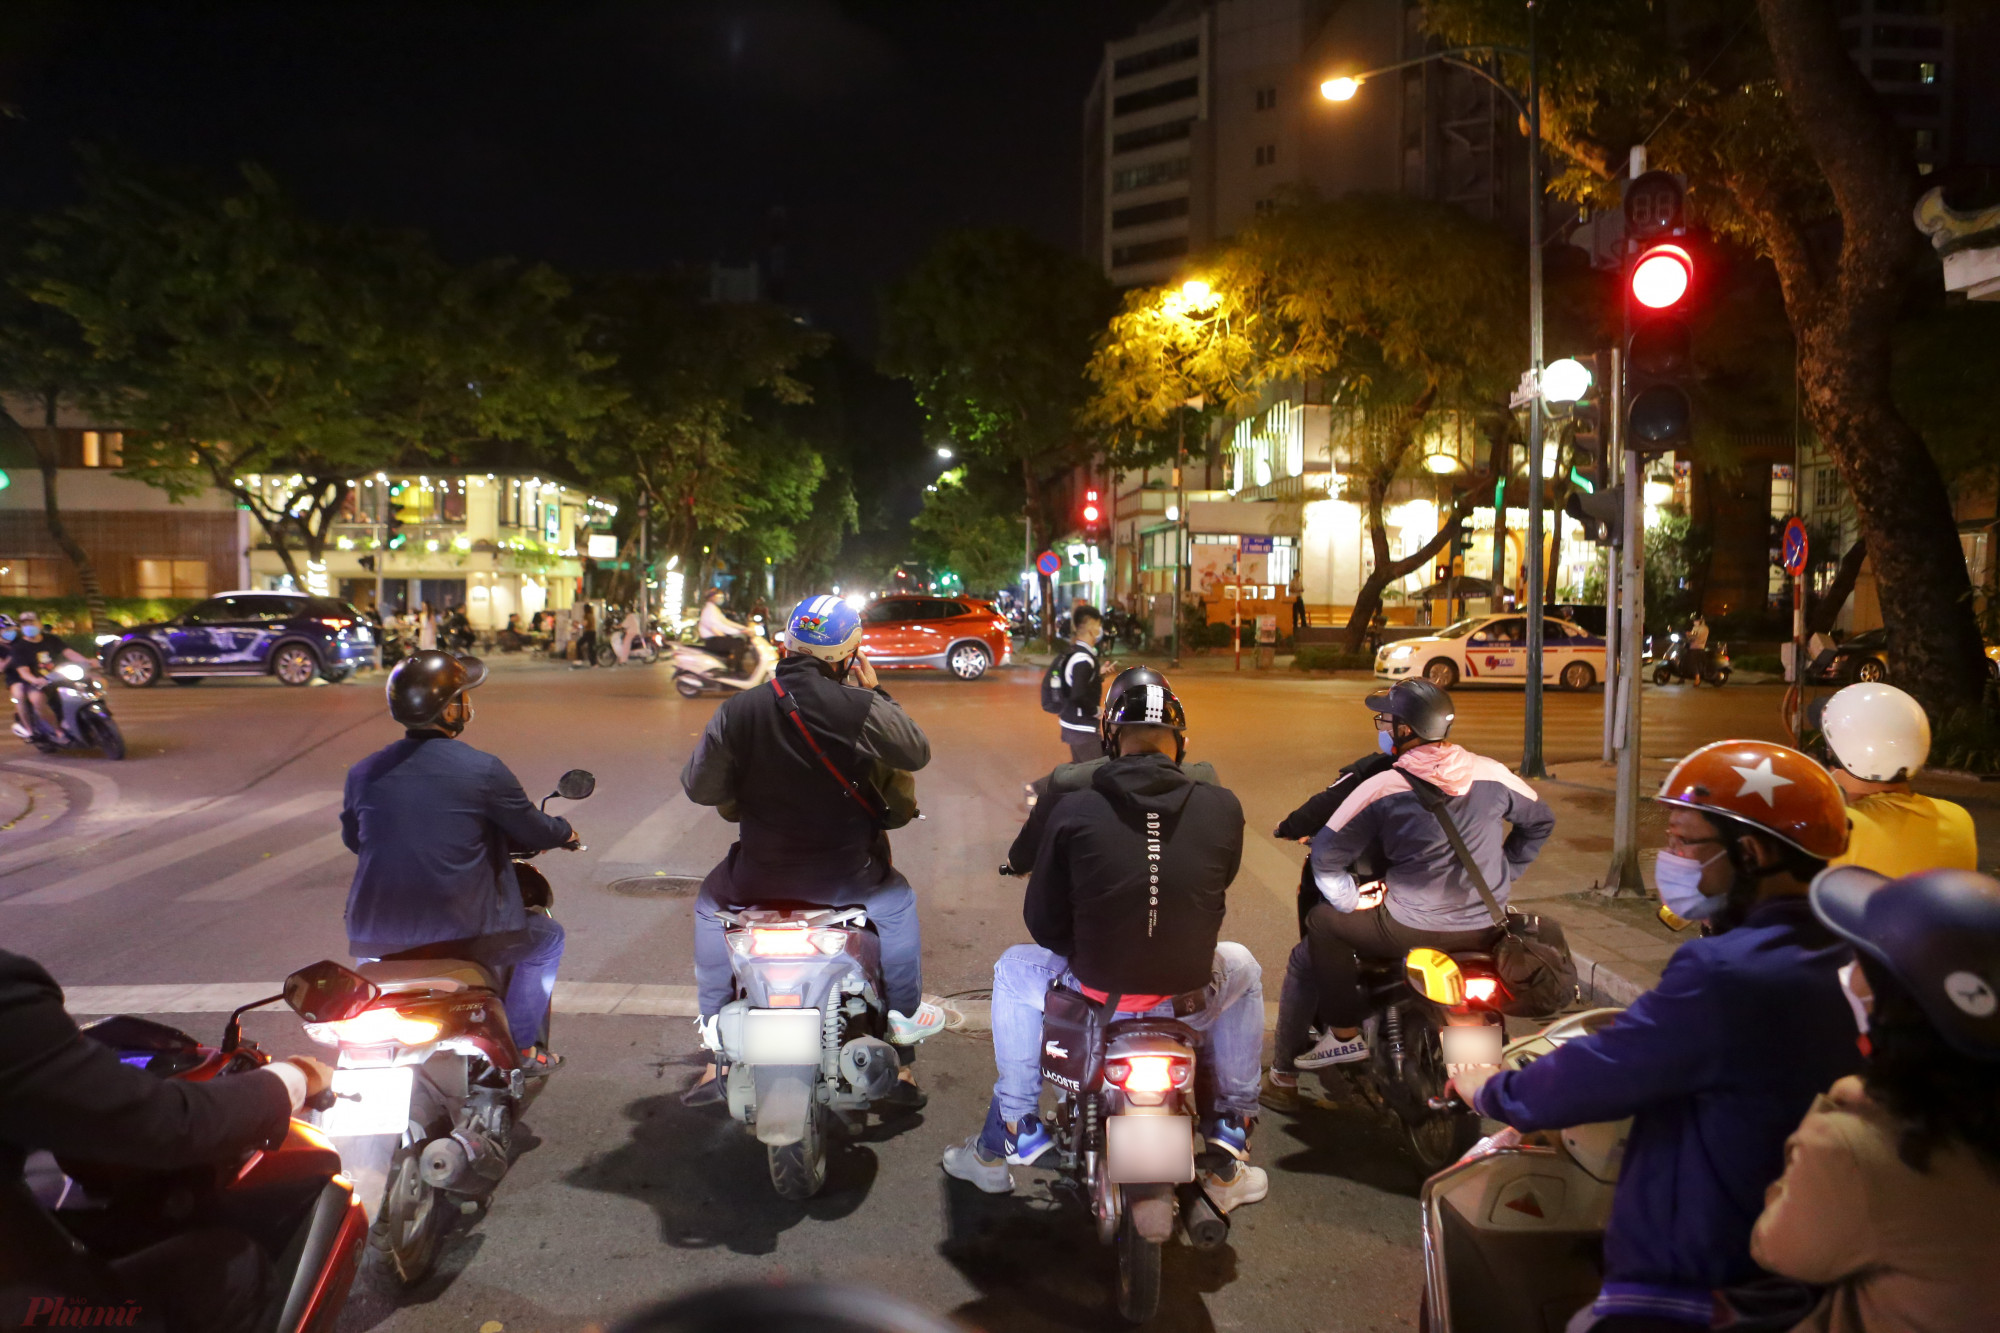 Tổ liên nghành 141 gồm 3 lực lượng: cảnh sát giao thông, cảnh sát cơ động và cảnh sát hình sự nhằm trấn áp tội phạm, giữ gìn an ninh trật tự, an toàn giao thông chung trên địa bàn thành phố Hà Nội.